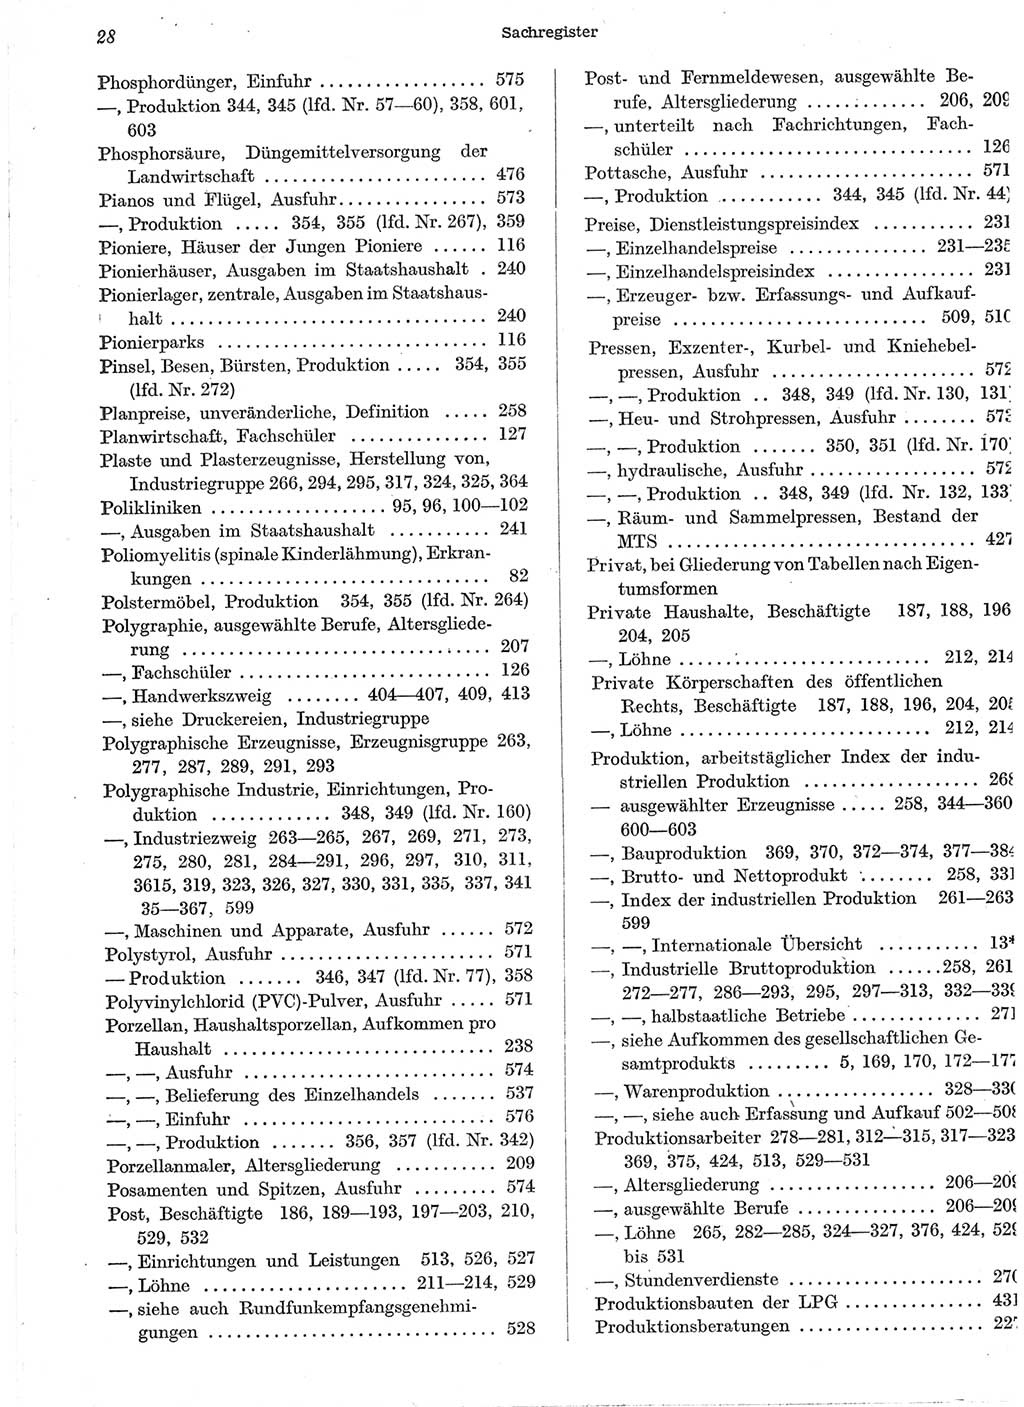 Statistisches Jahrbuch der Deutschen Demokratischen Republik (DDR) 1958, Seite 28 (Stat. Jb. DDR 1958, S. 28)